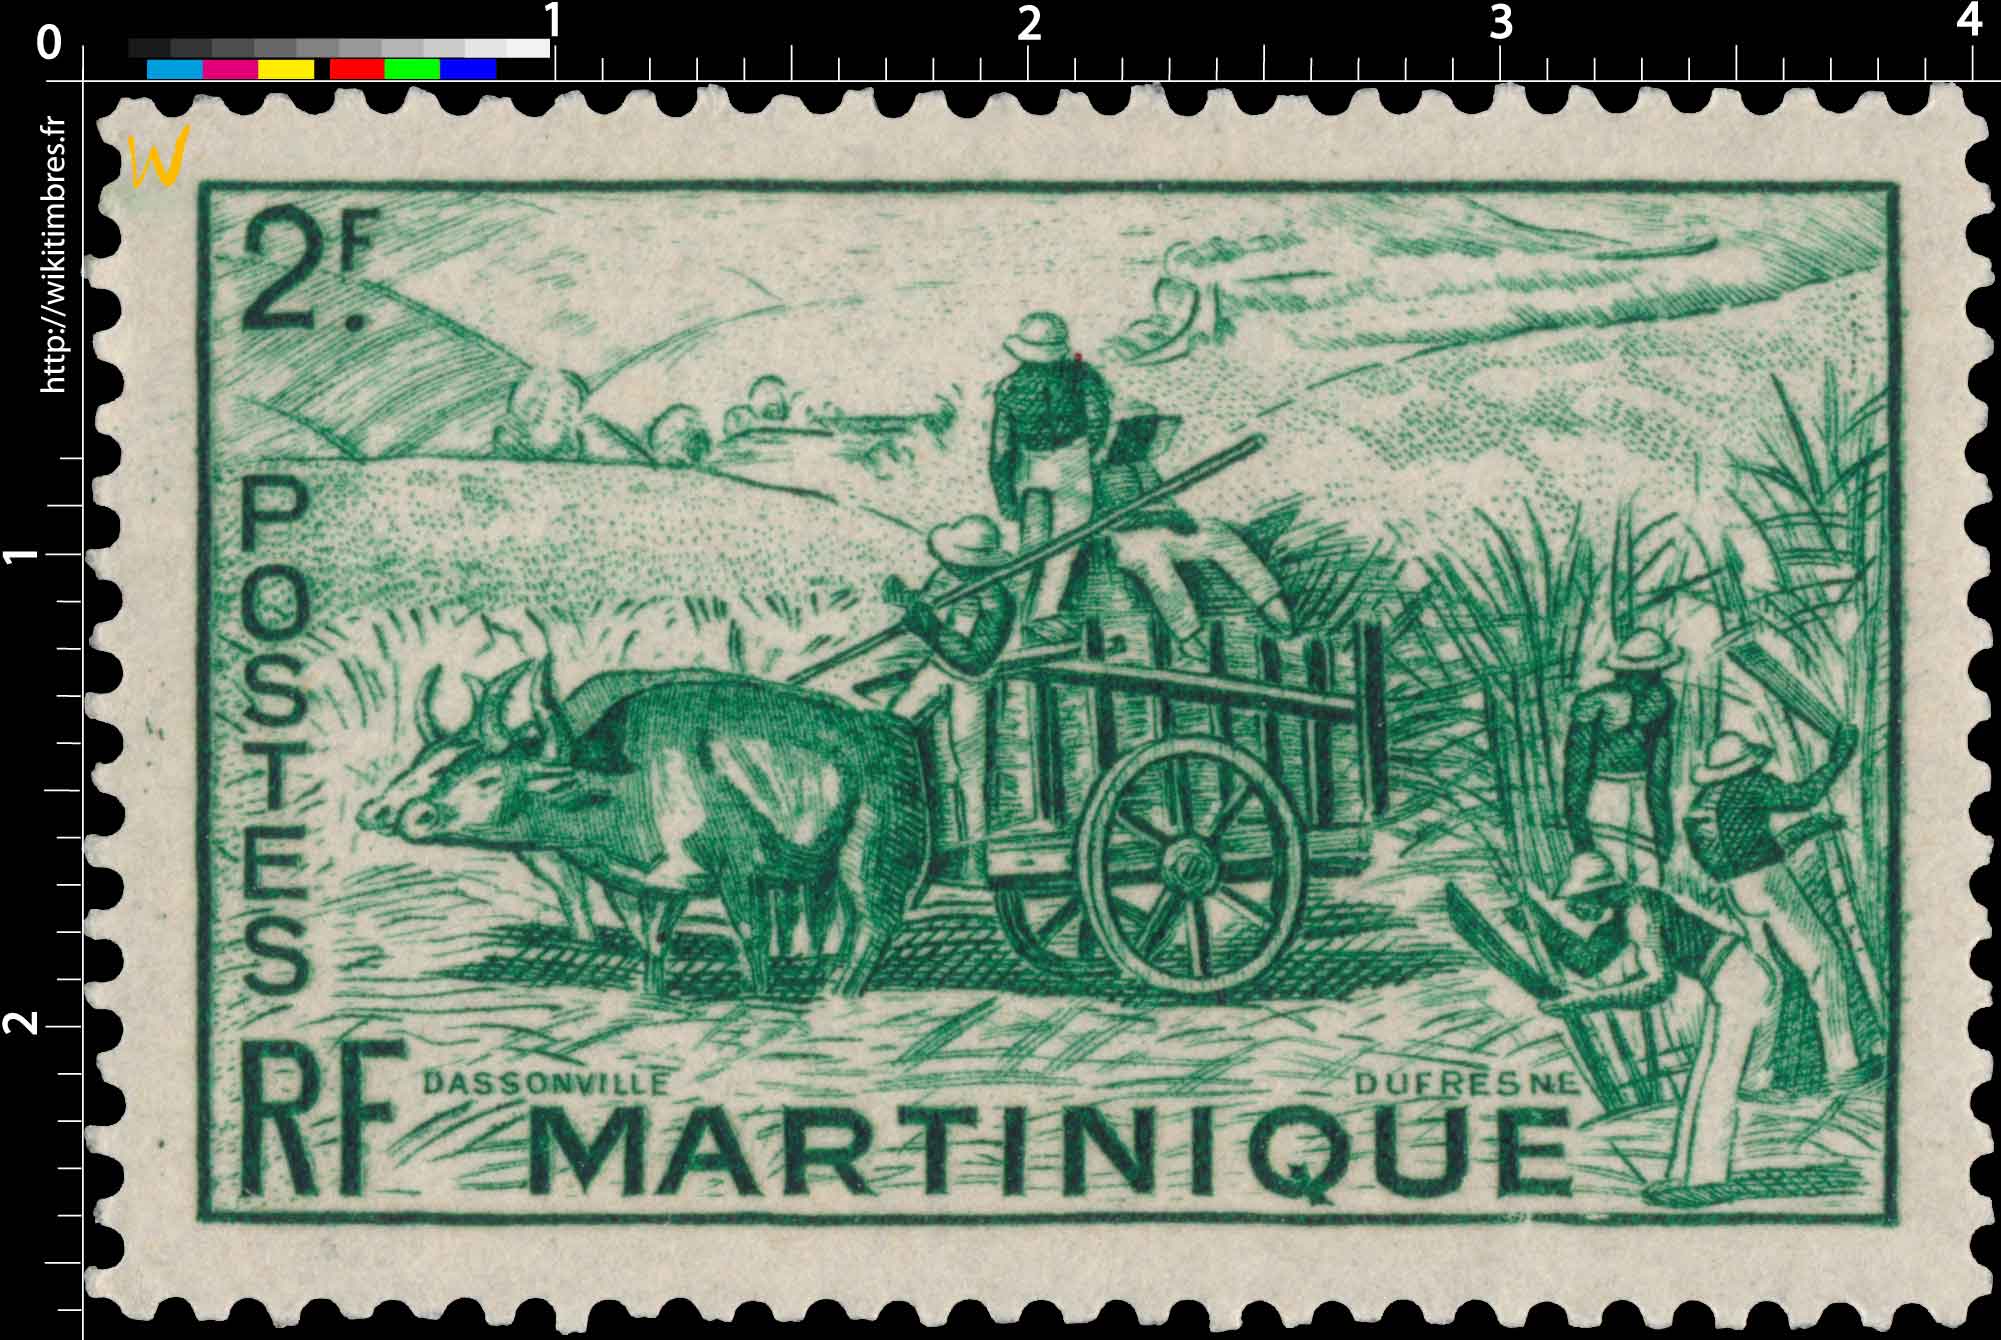 Martinique - Récolte de la canne à sucre